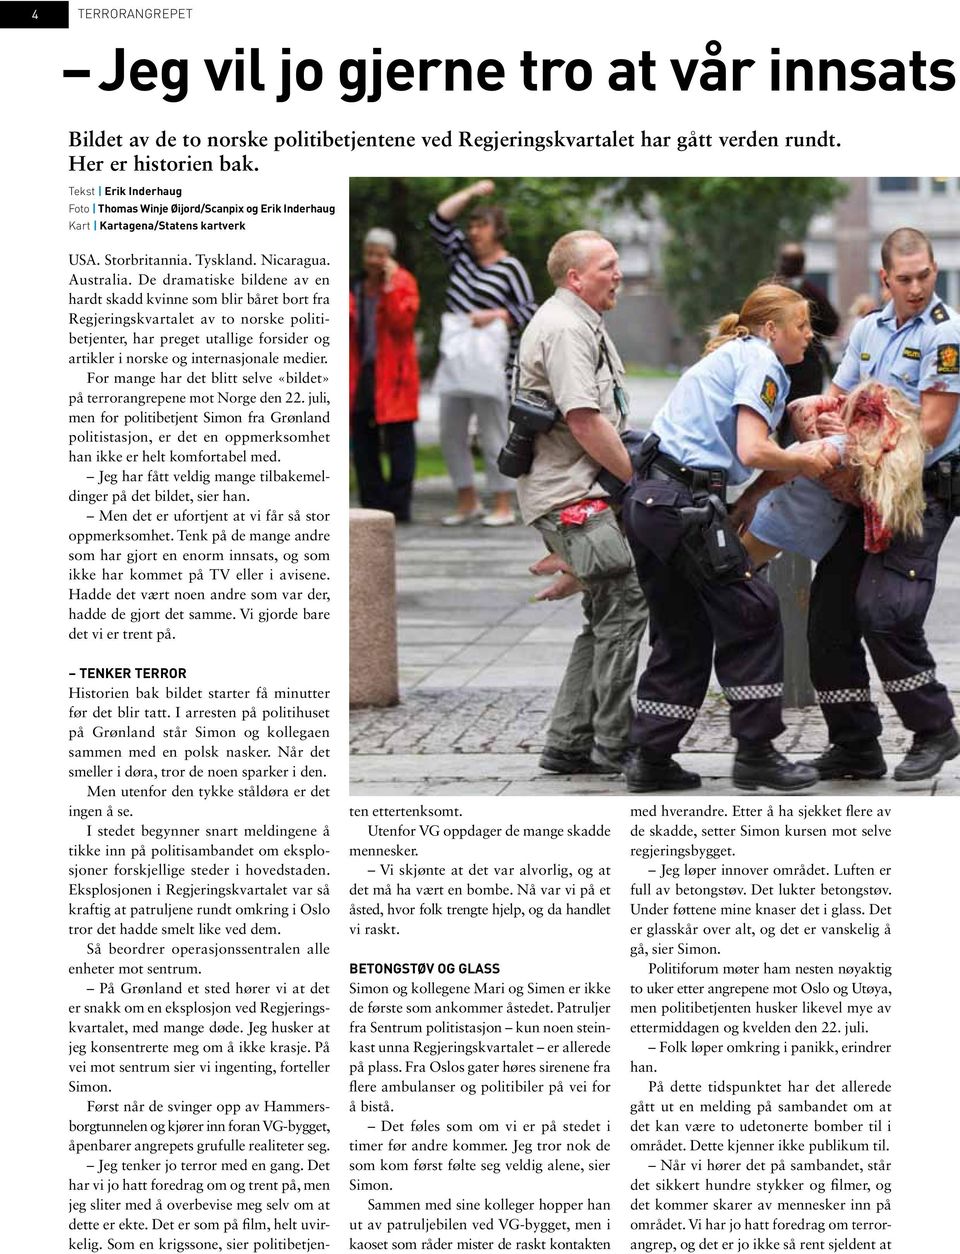 De dramatiske bildene av en hardt skadd kvinne som blir båret bort fra Regjeringskvartalet av to norske politibetjenter, har preget utallige forsider og artikler i norske og internasjonale medier.